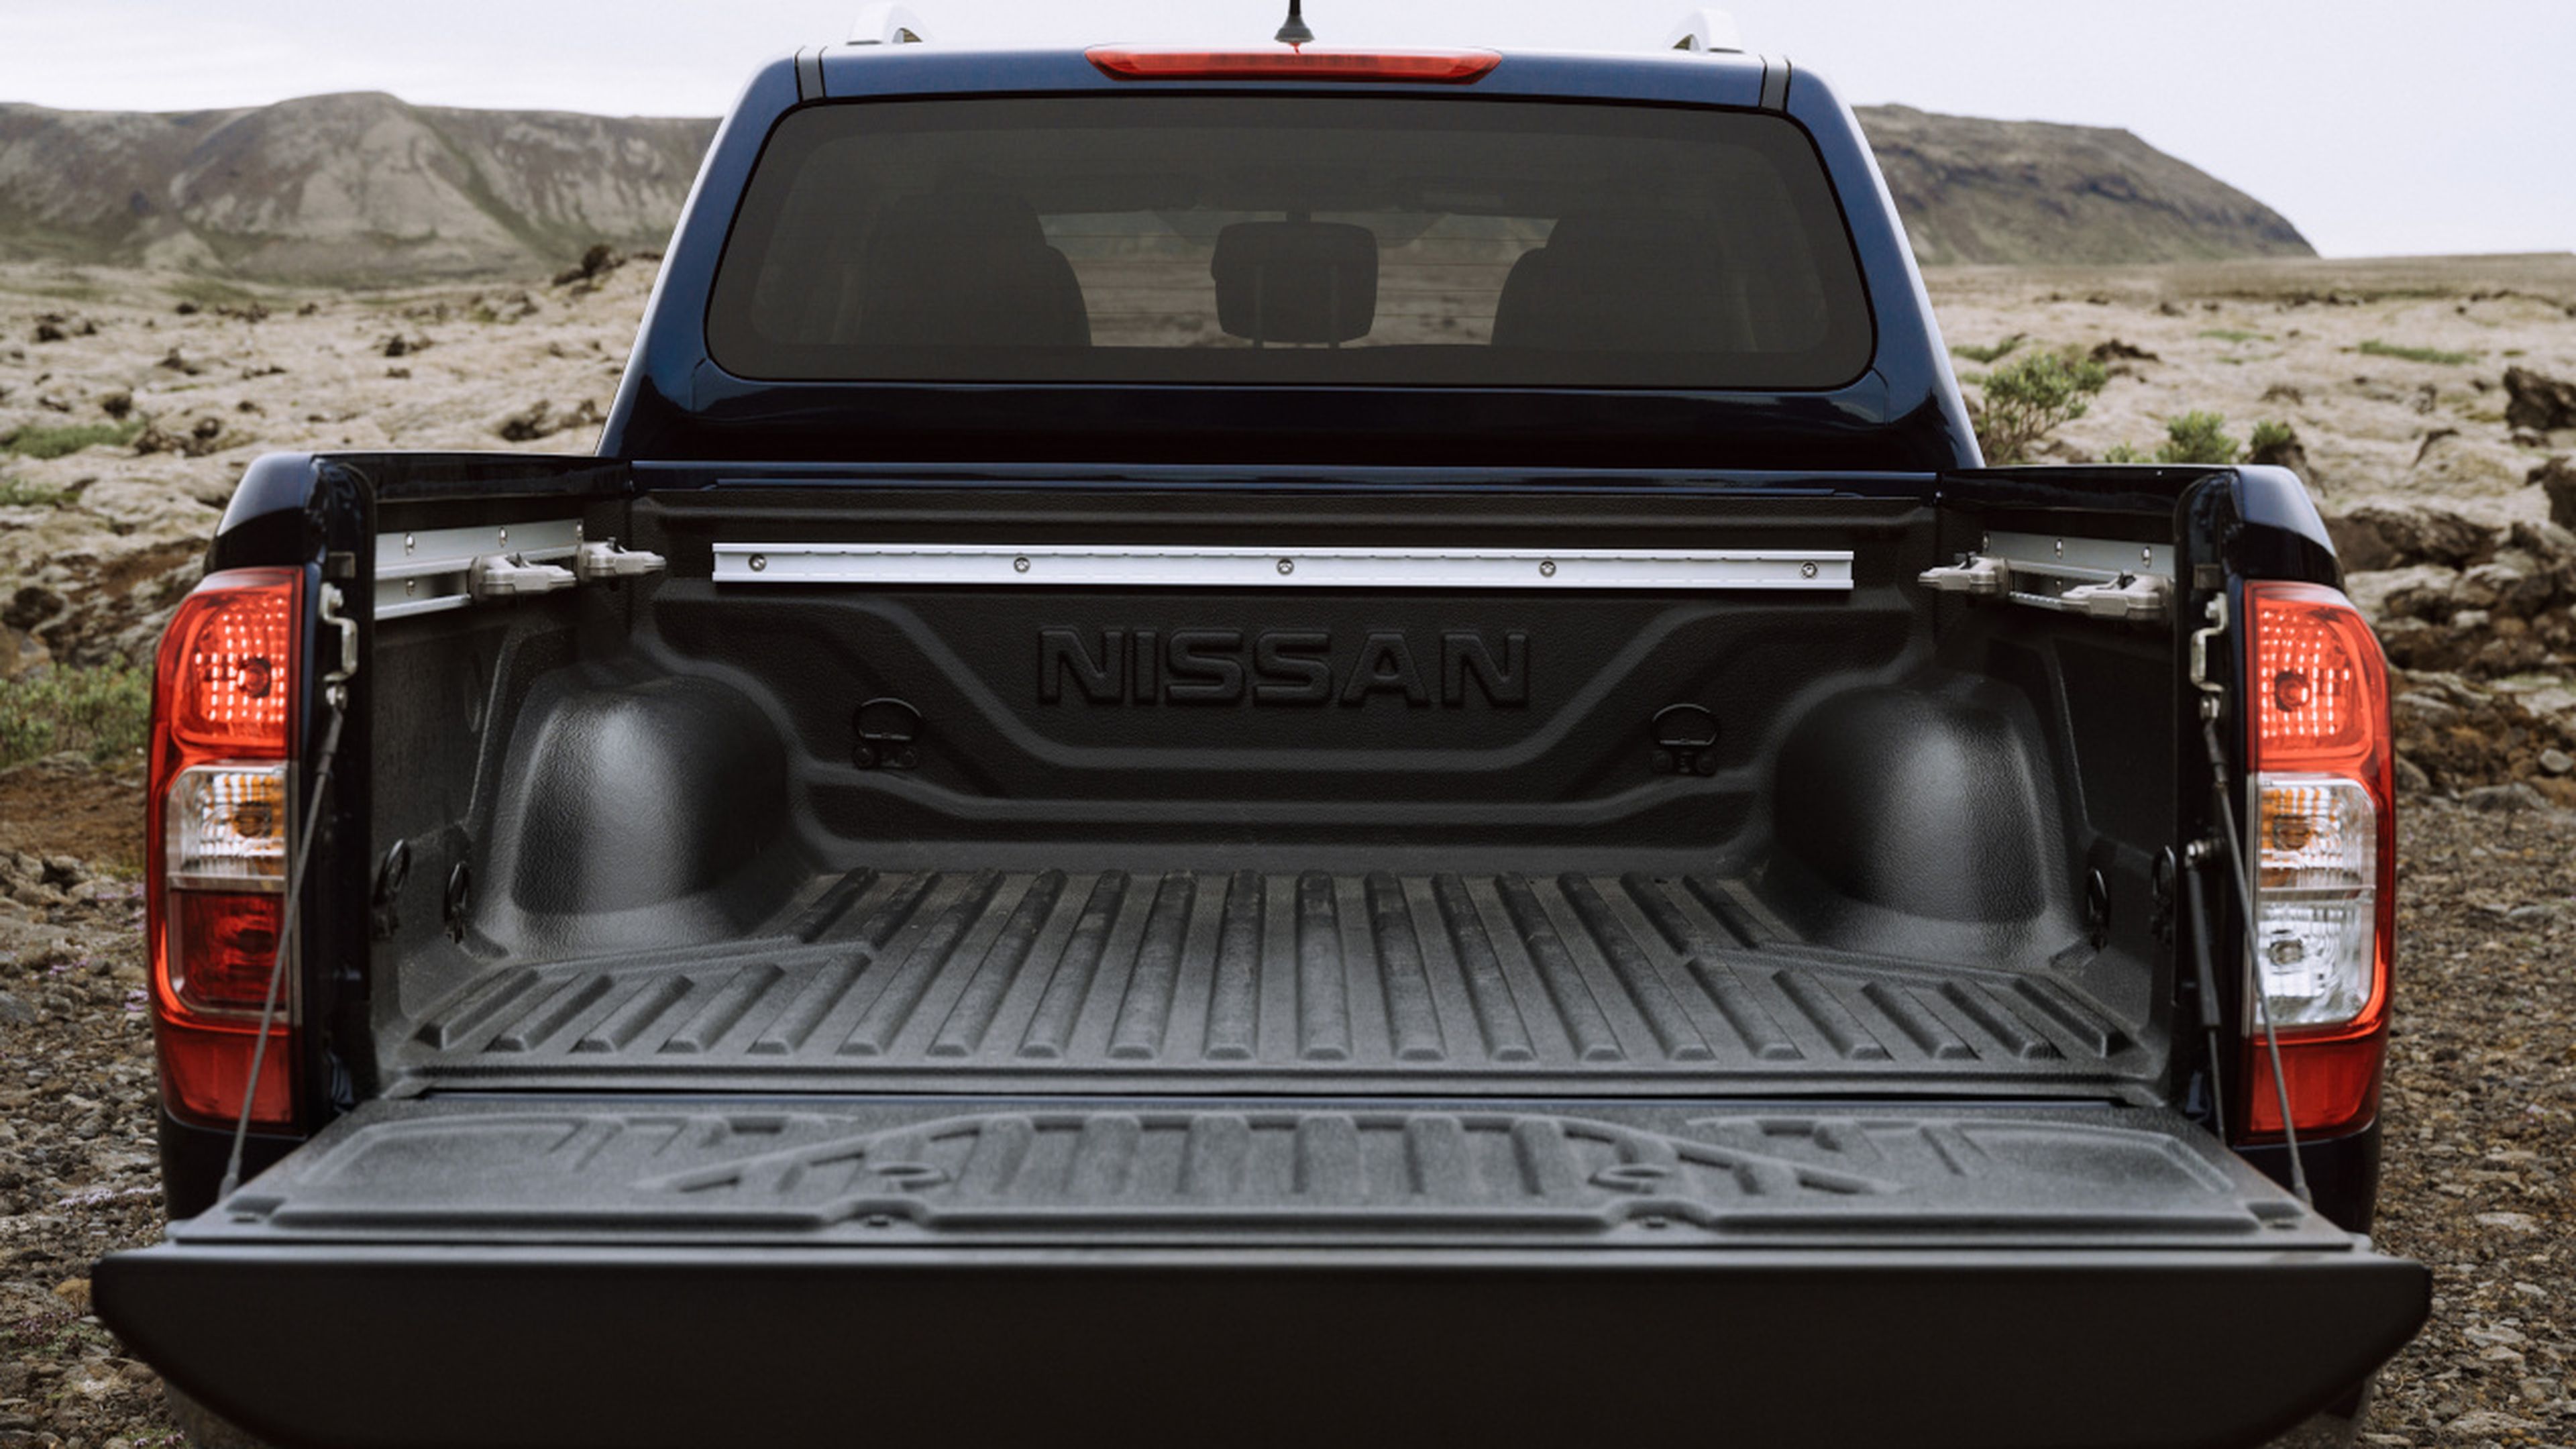 La bañera del Nissan Navara 2019 puede transportar hasta 600 kg.